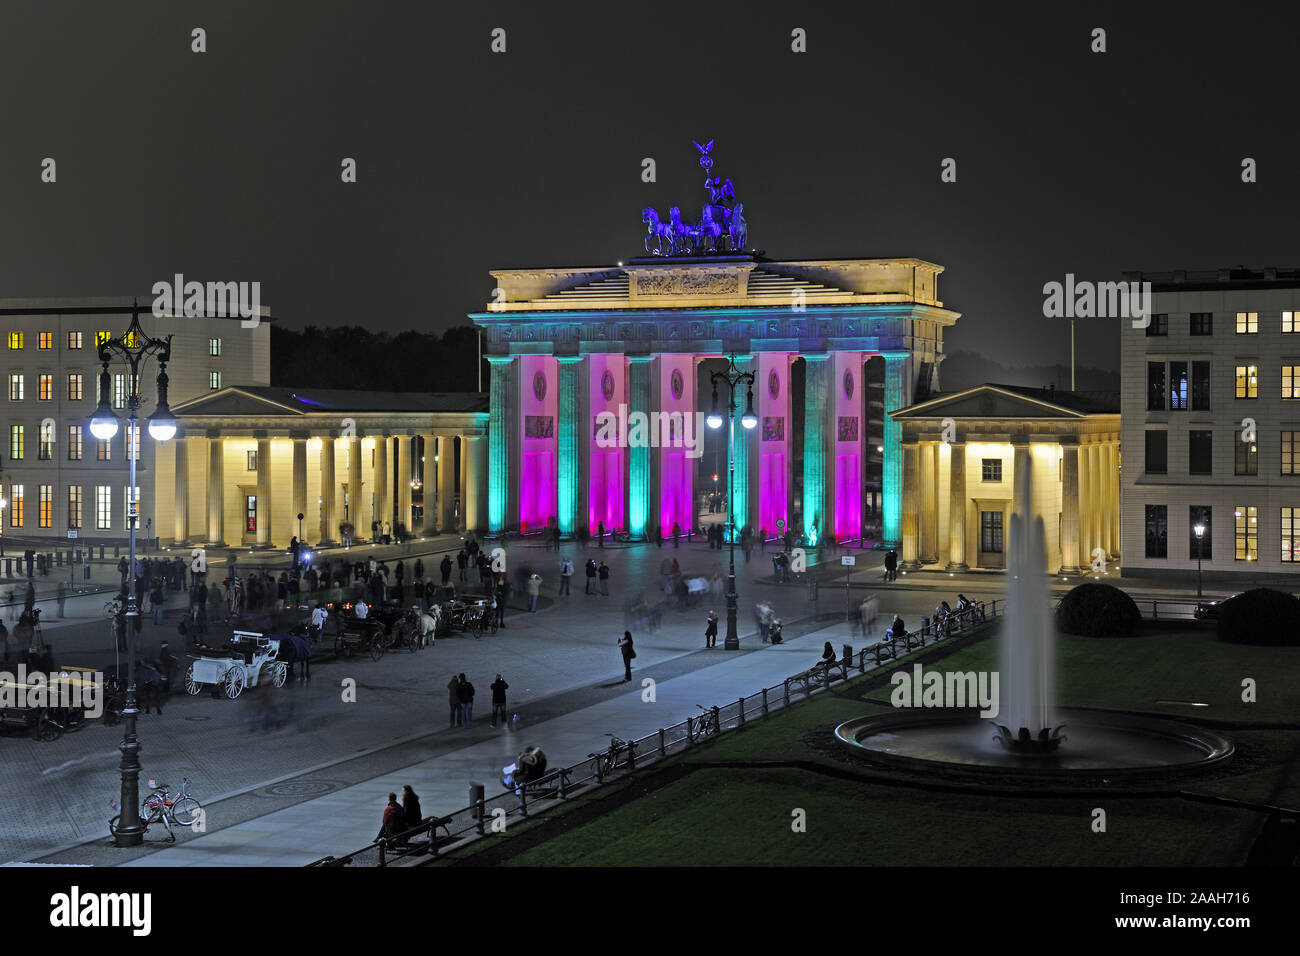 Brandenburger Tor am Pariser Platz, Berlin, Deutschland, Europa, illuminiert zum festa delle luci 2009 Foto Stock